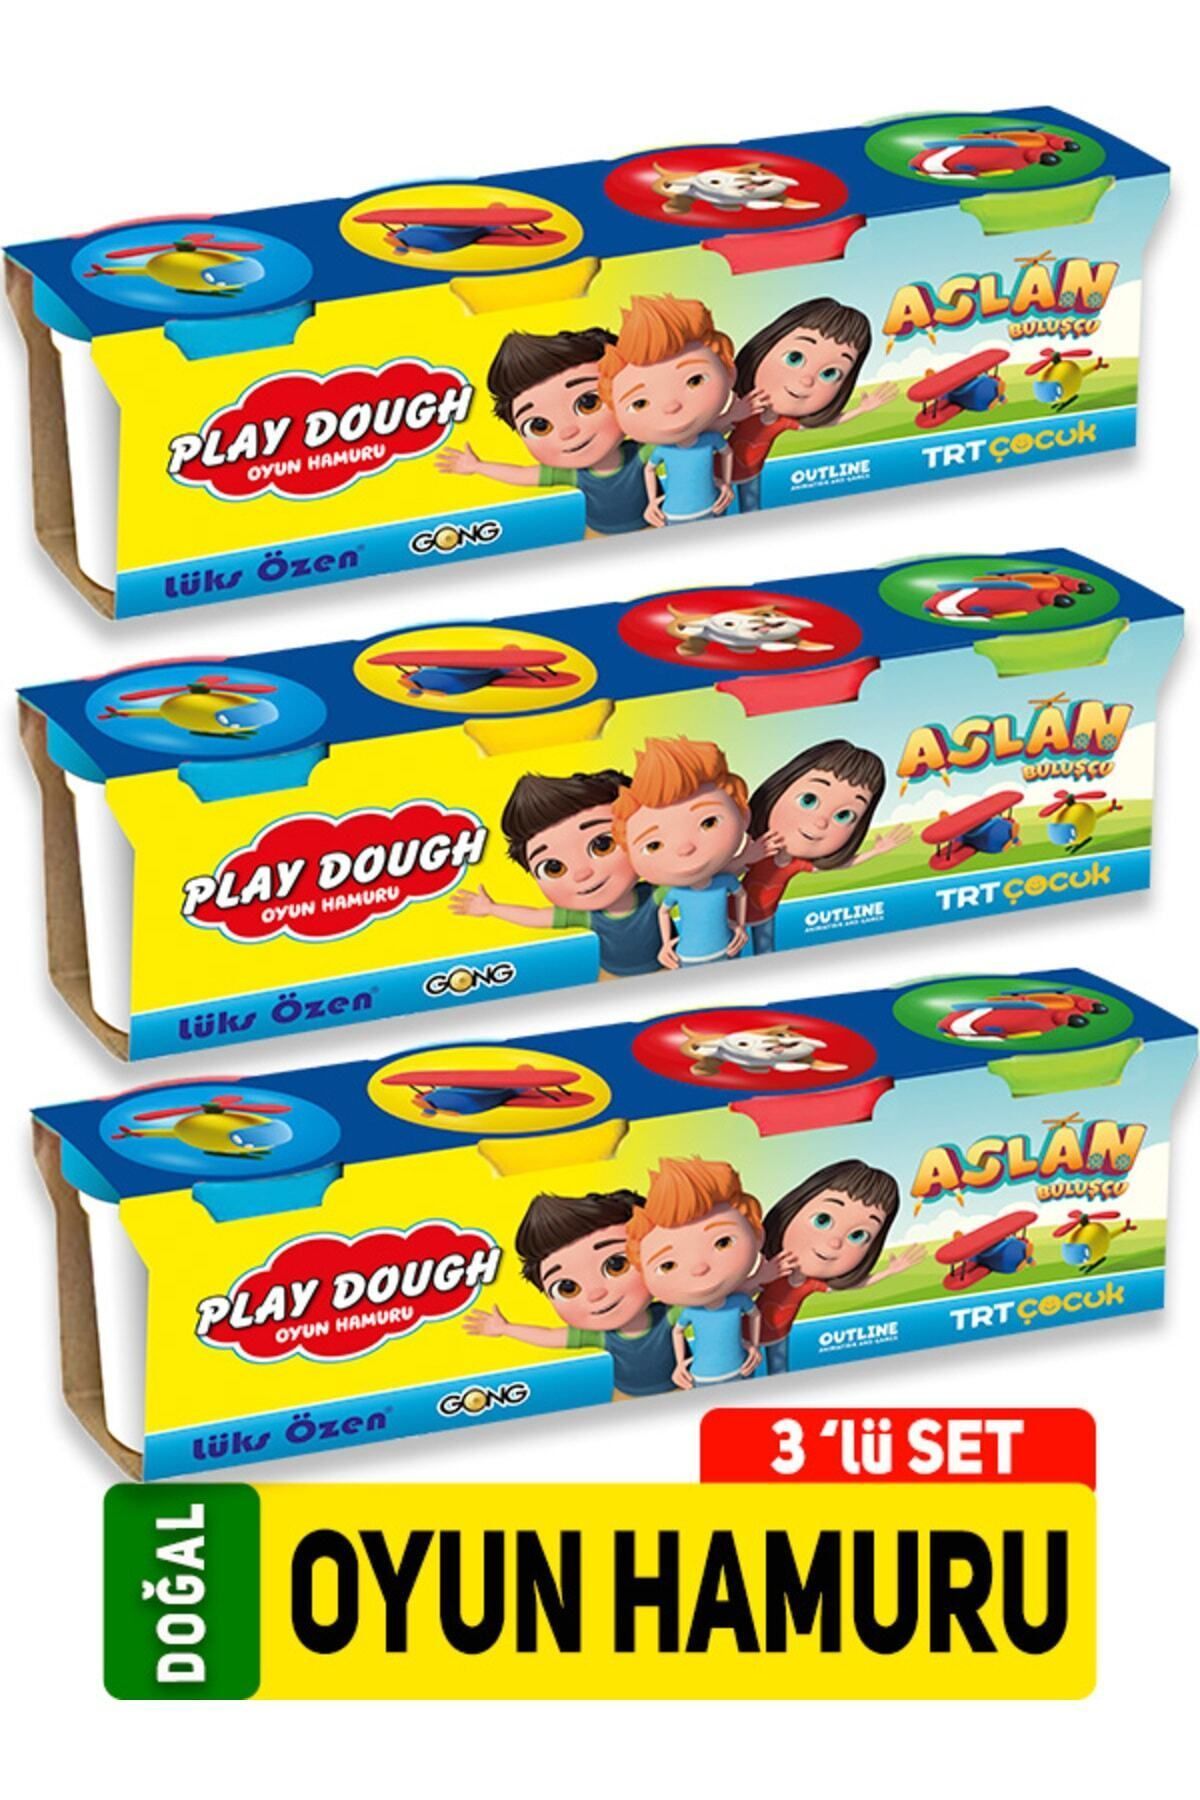 GONG YAYINCILIK Play Dough Doğal Oyun Hamuru 4 Renk 3'lü Set 1344 Gr